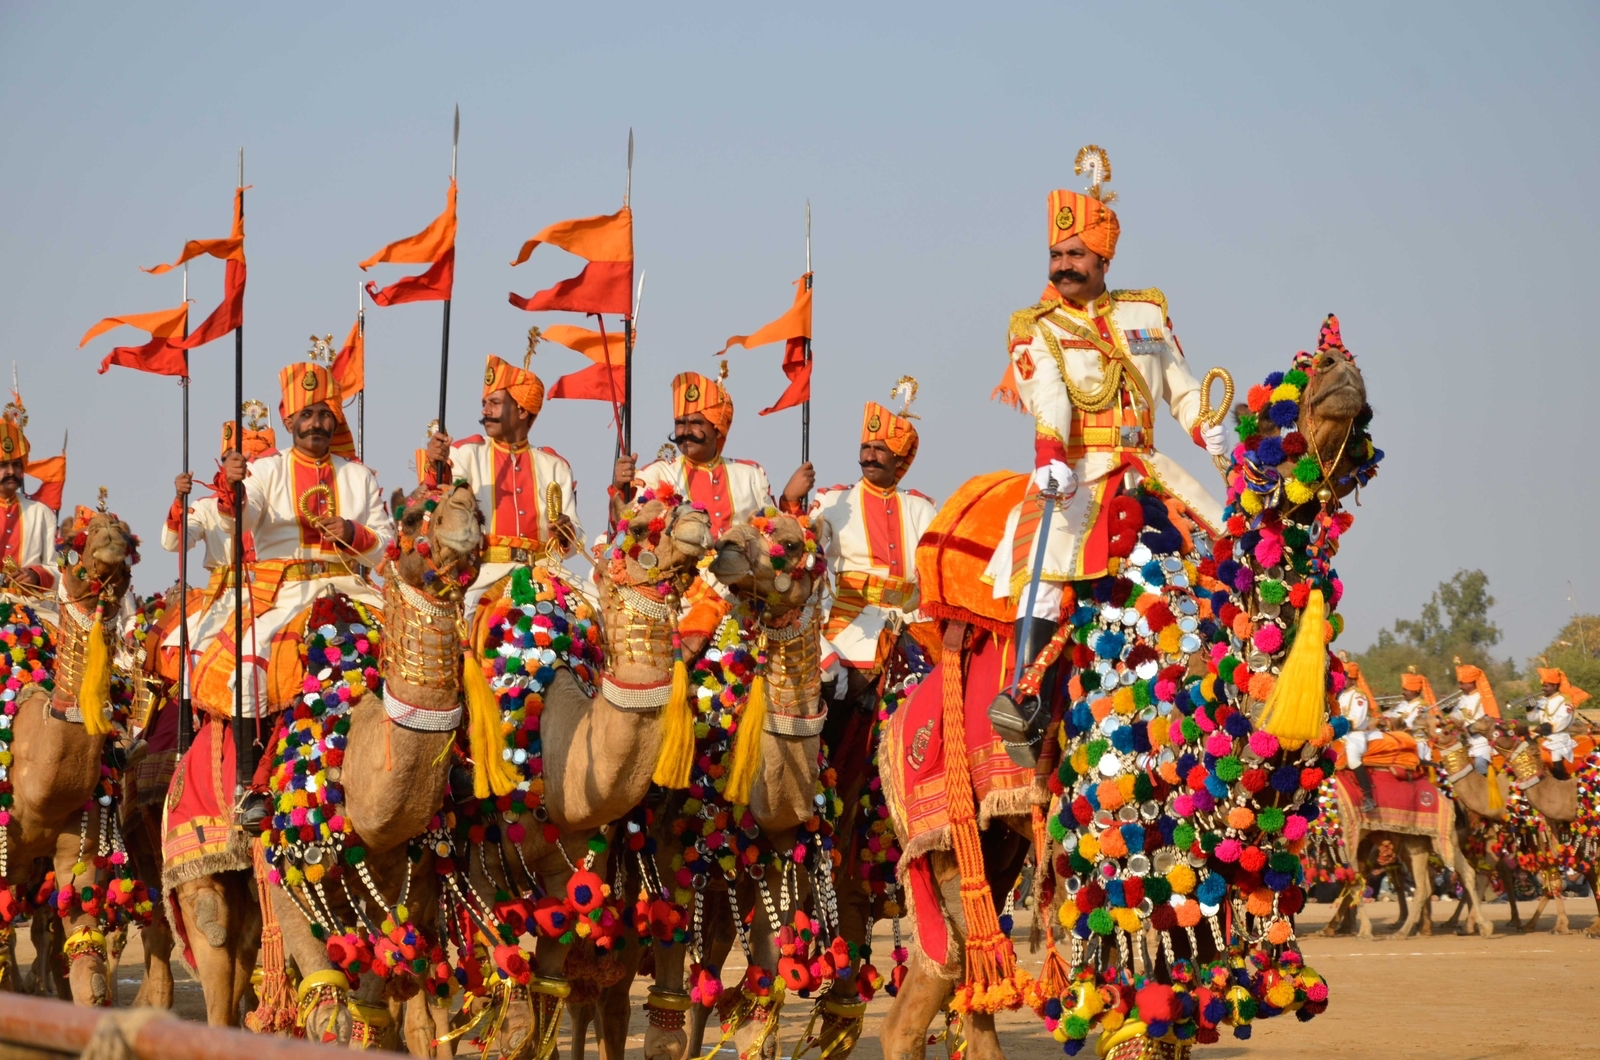 ‘Desert Festival’ of Rajasthan set to take off February 2 in Jaisalmer